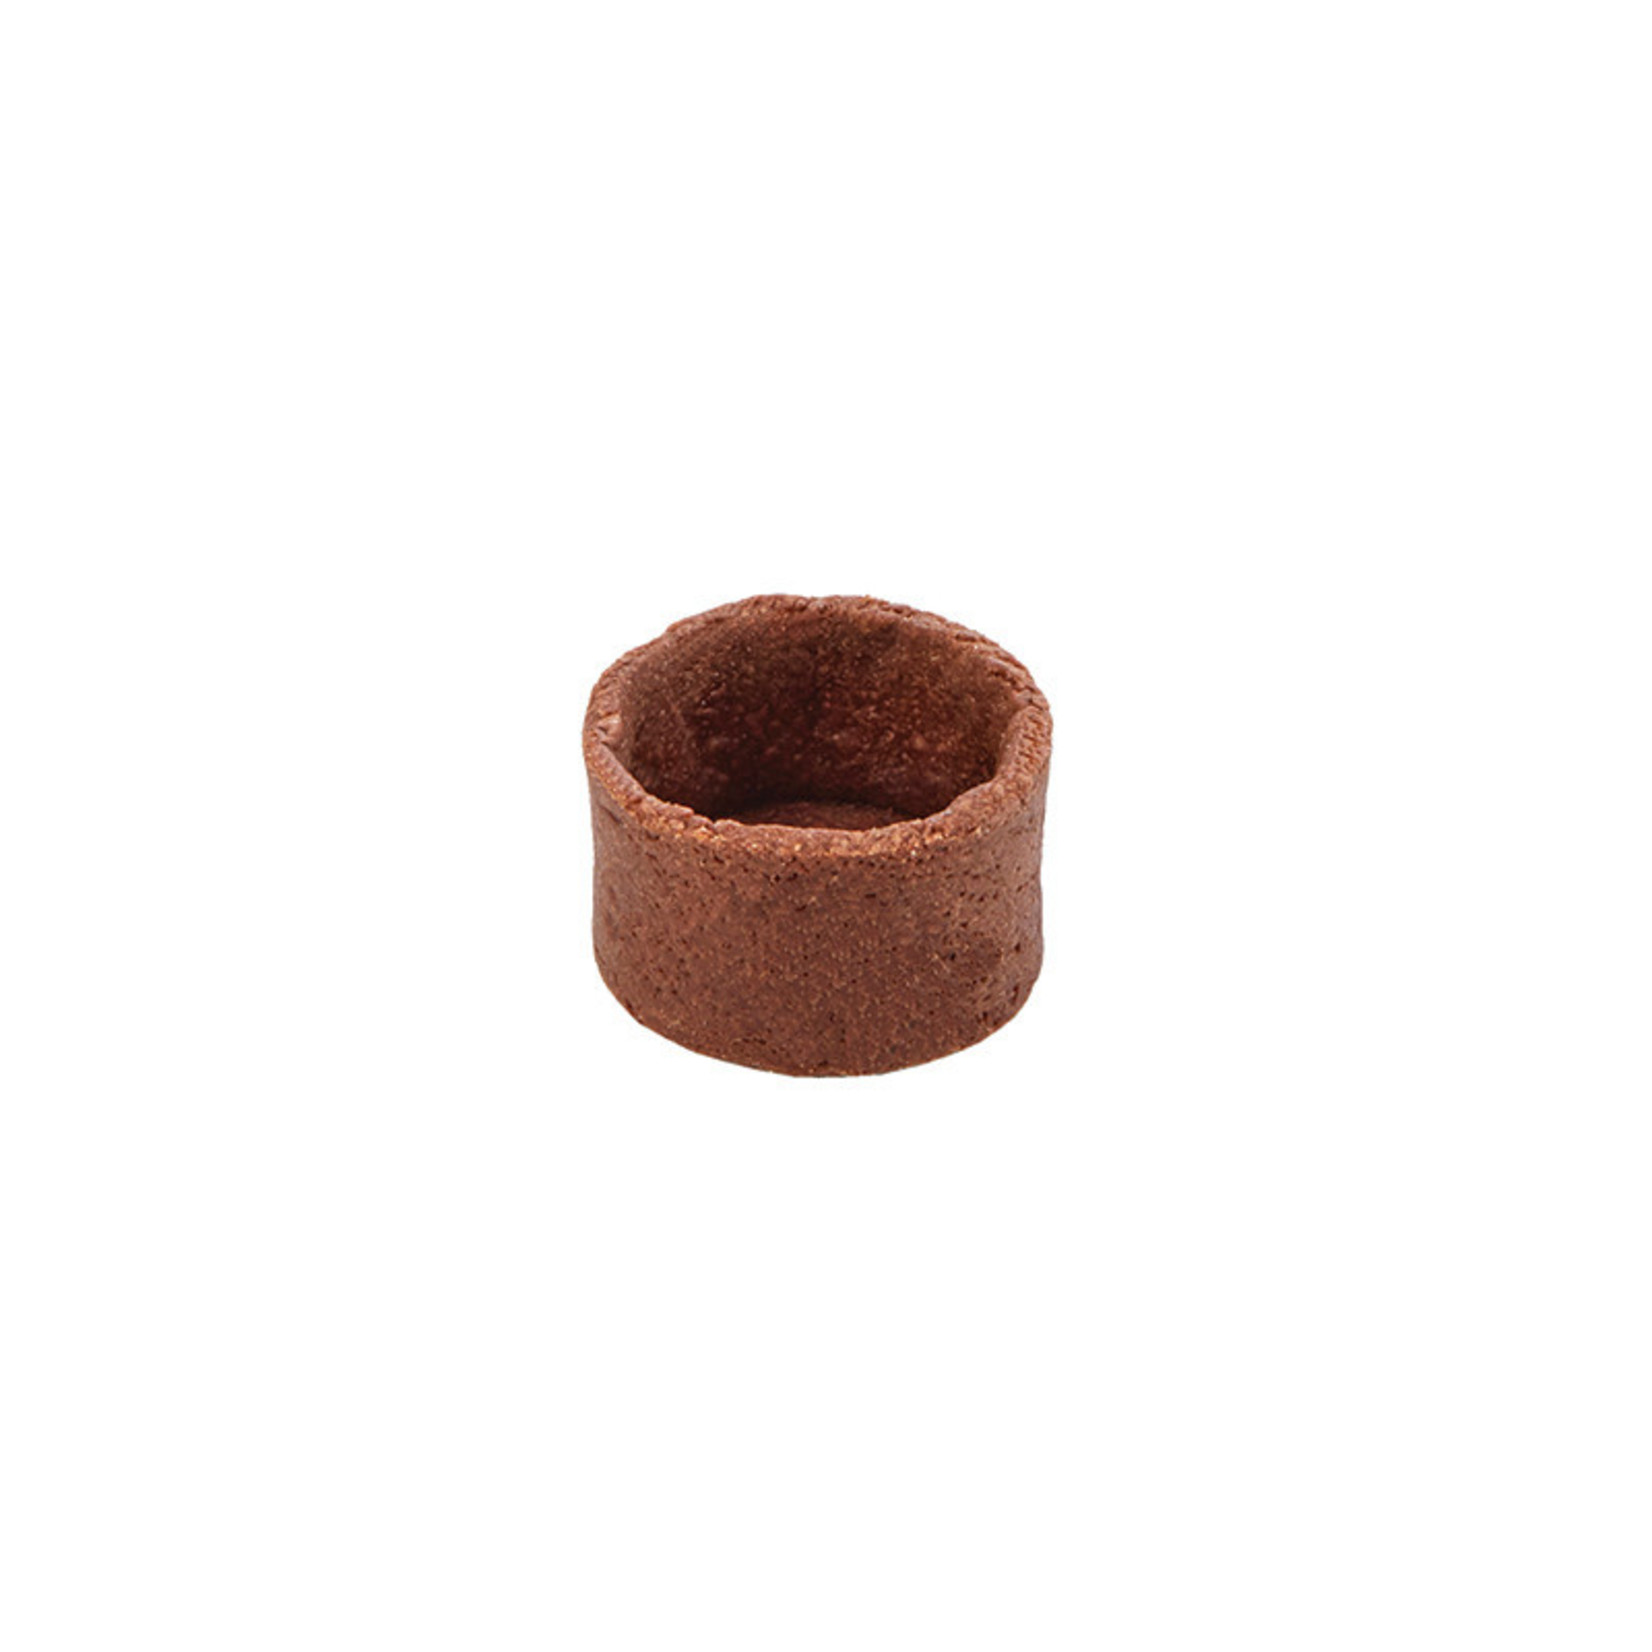 Moda Moda - Chocolate Round Tart shell - 1.4" (48 ct) sleeve